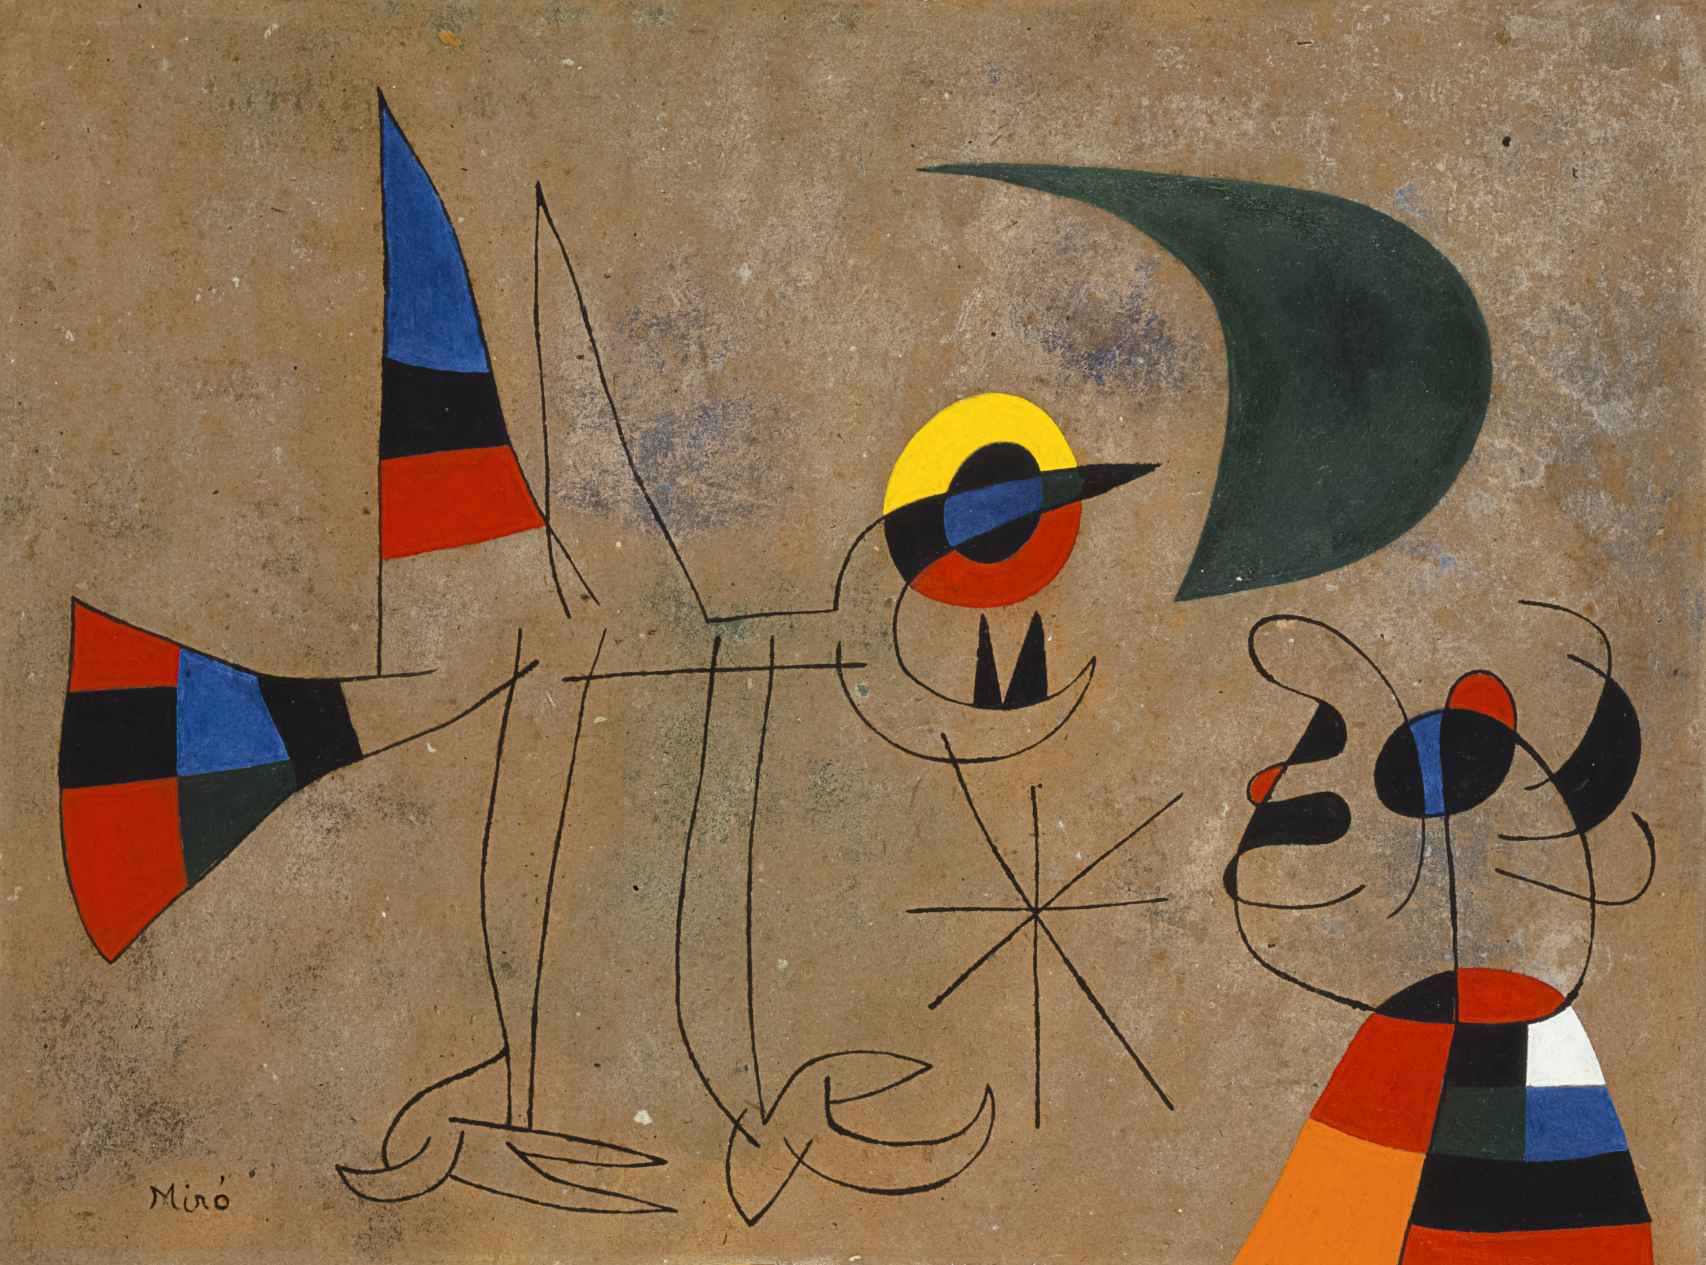 El canto del pájaro al rocío de la luna, Joan Miró, 1955